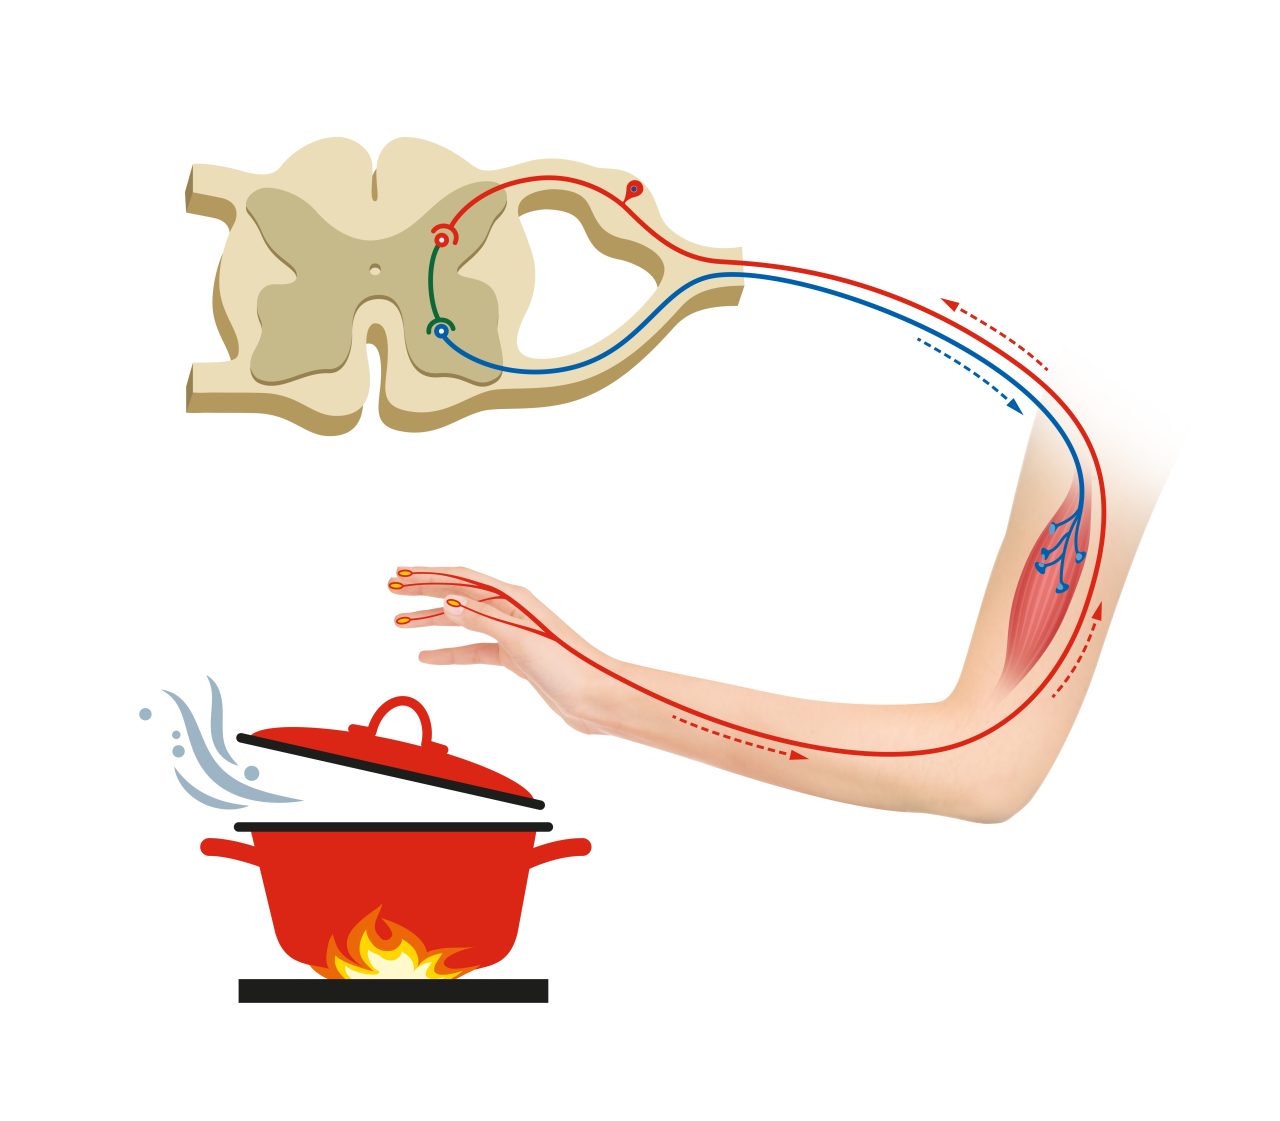 Illustrasjon som viser nervesystemet i en arm hvis du tar på noe som er varmt.